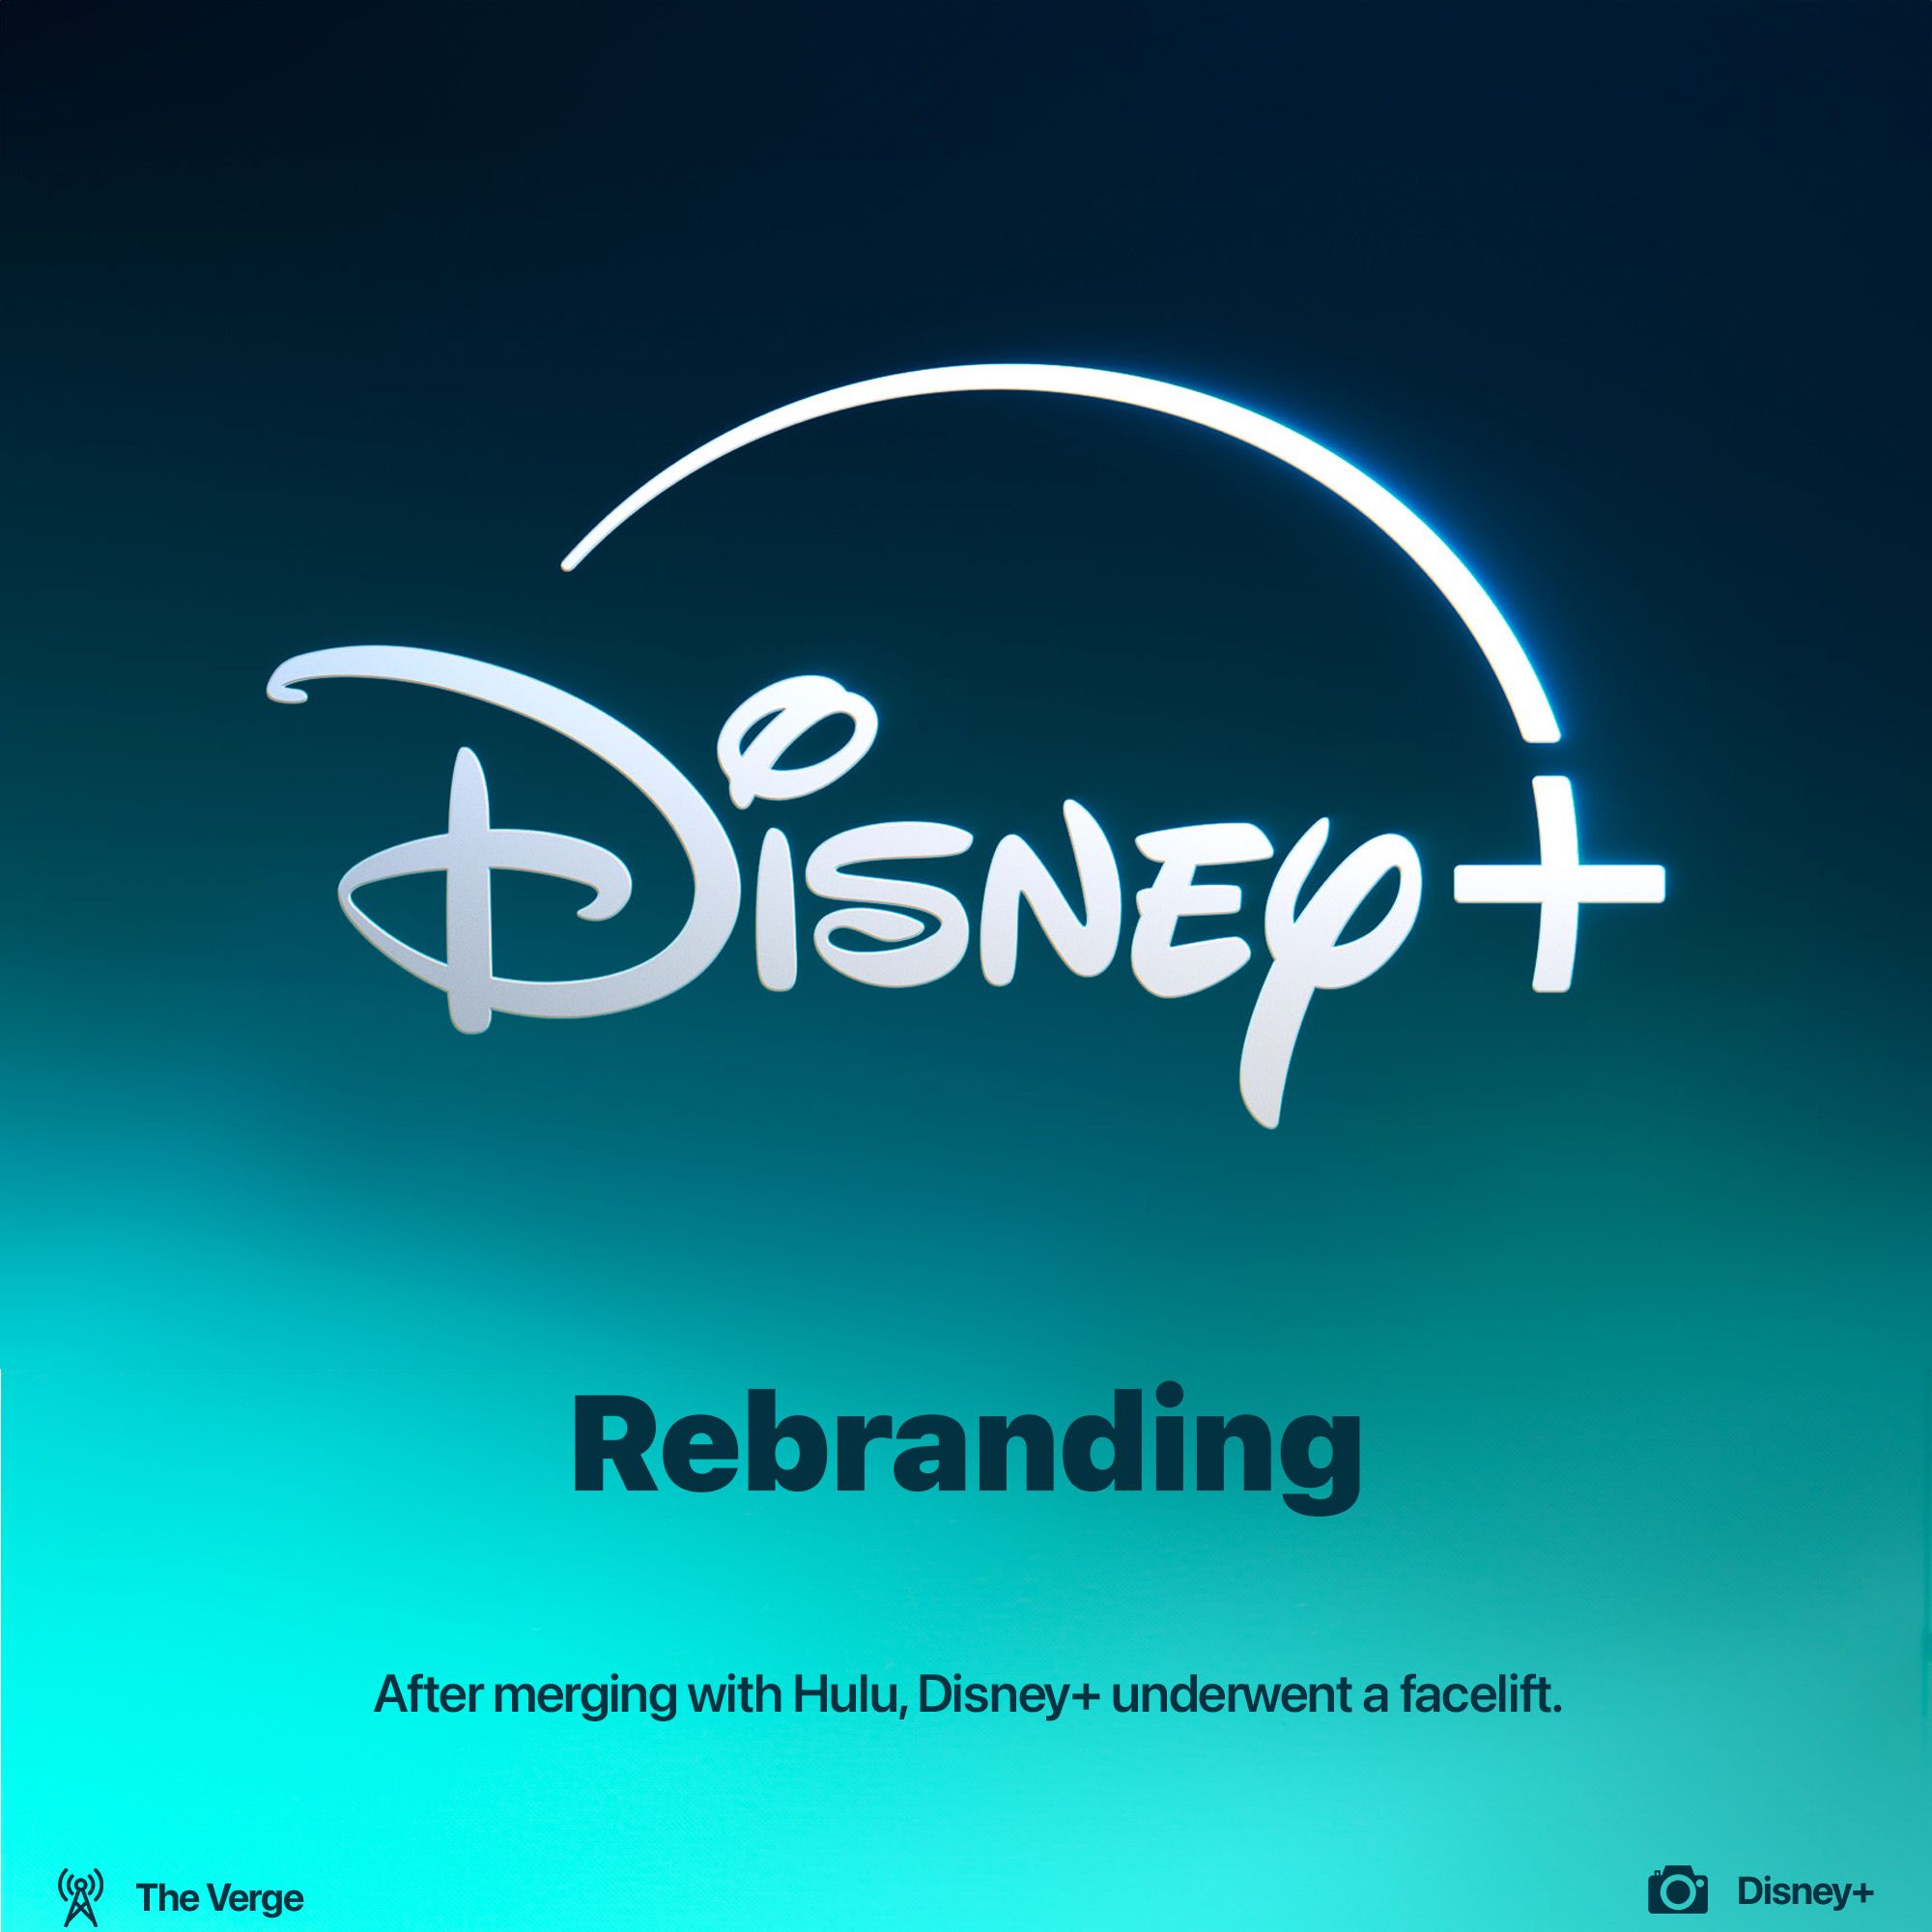 Disney+ rebranded